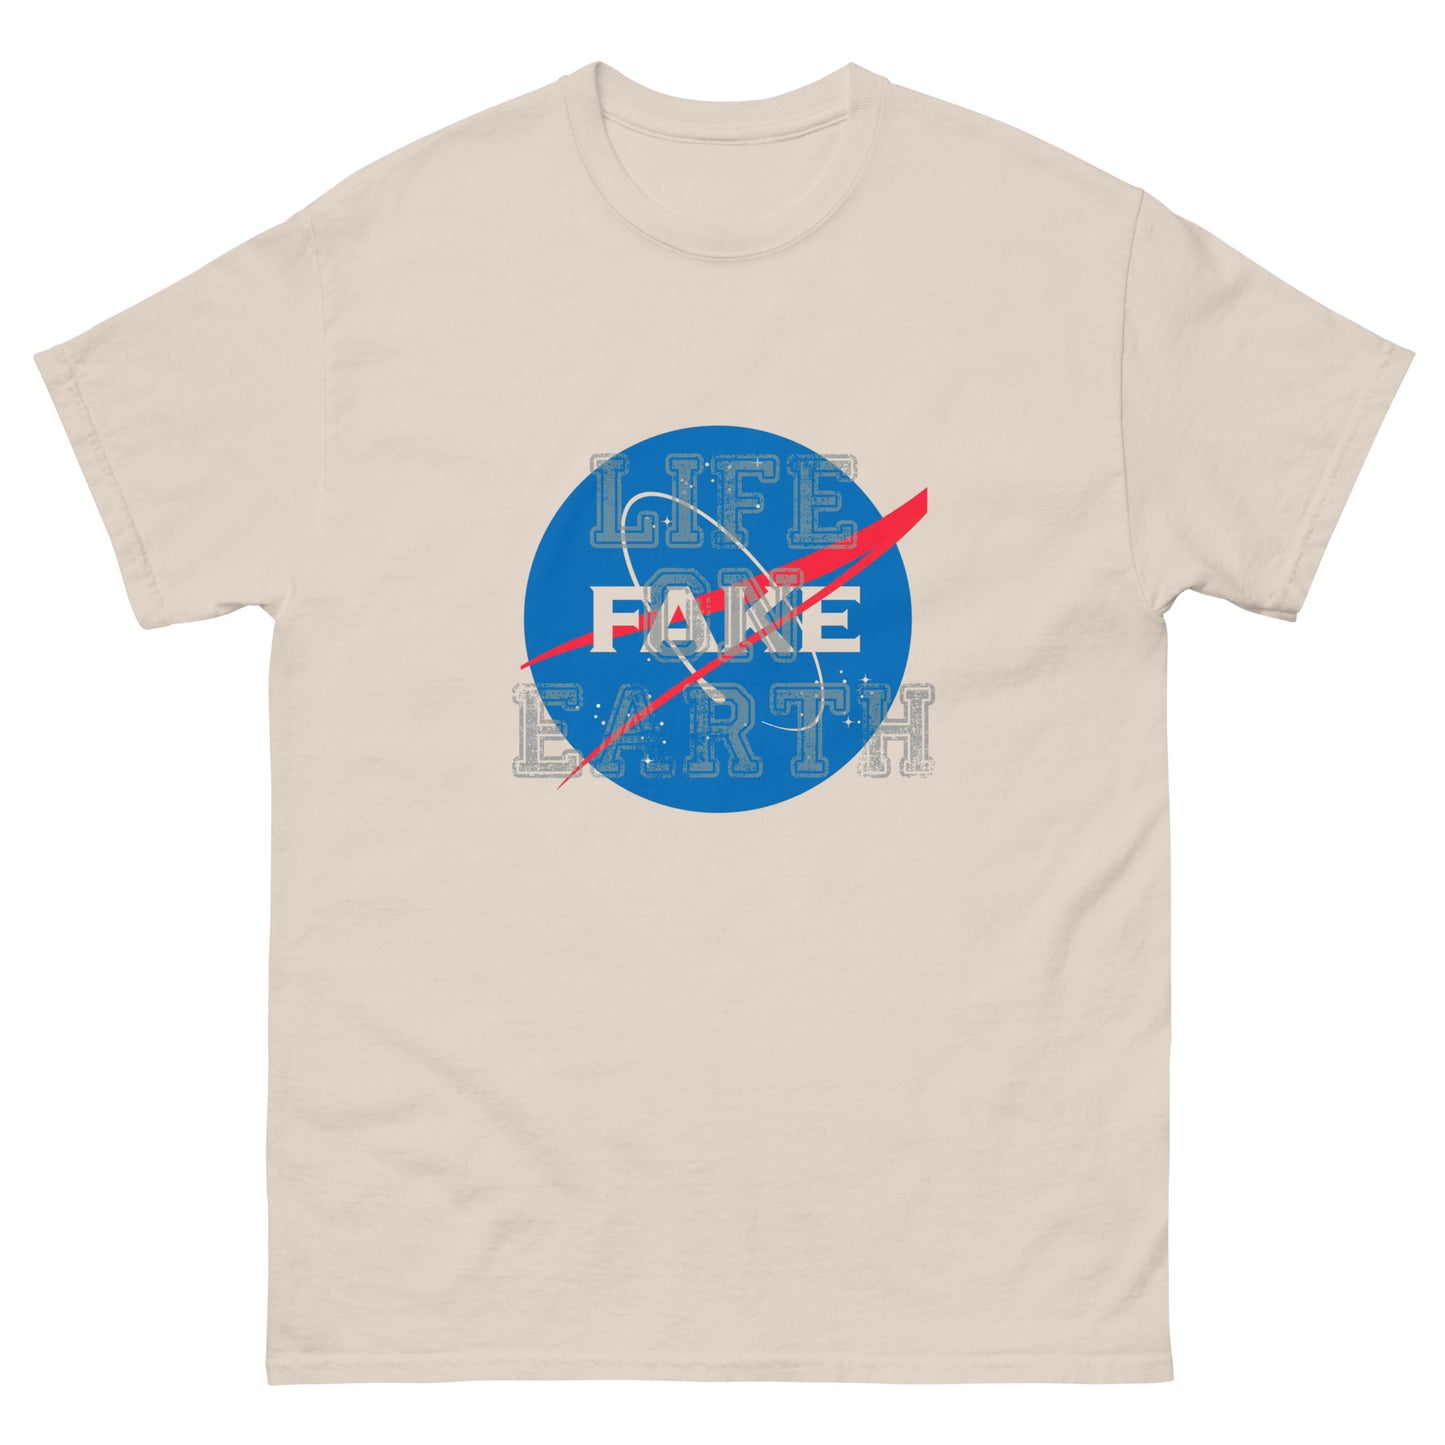 "Fake Space" - T-Shirt